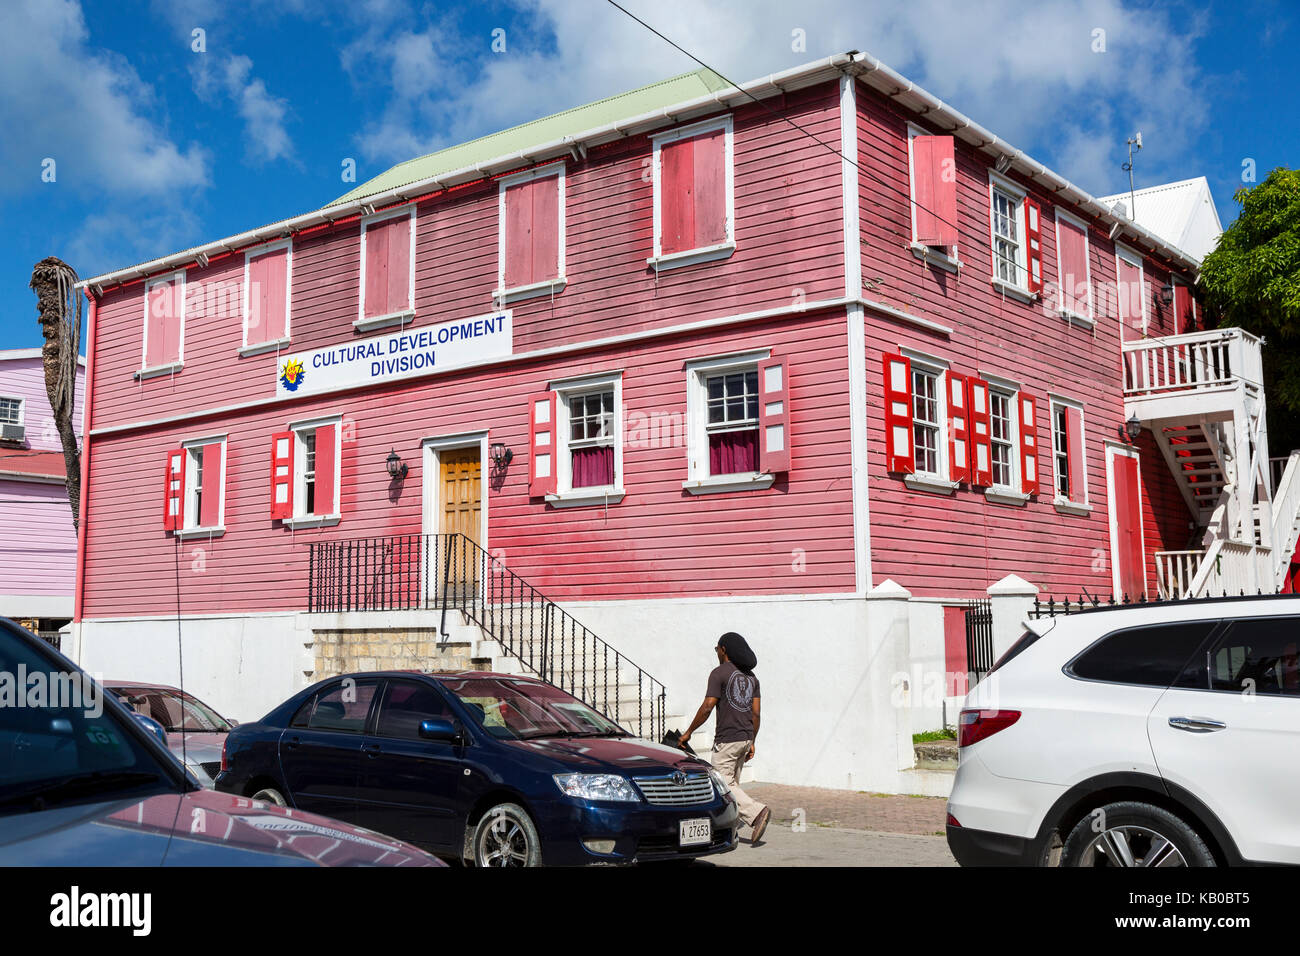 Saint John's, Antigua. Division du développement culturel, l'Office du gouvernement. Banque D'Images